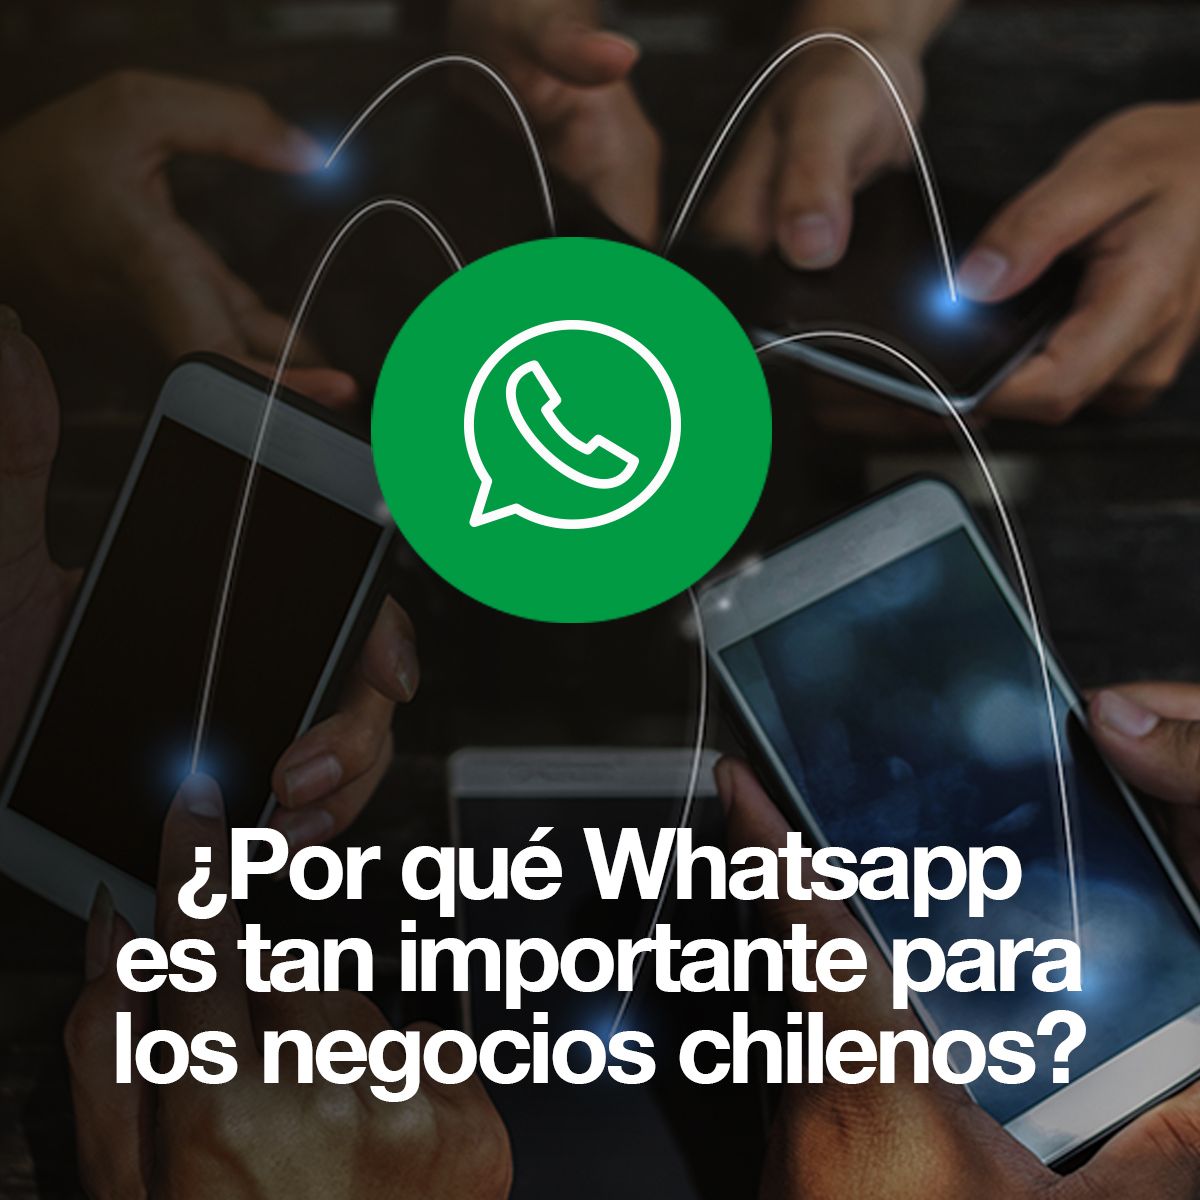 ¿Por qué Whatsapp es tan importante para los negocios chilenos?